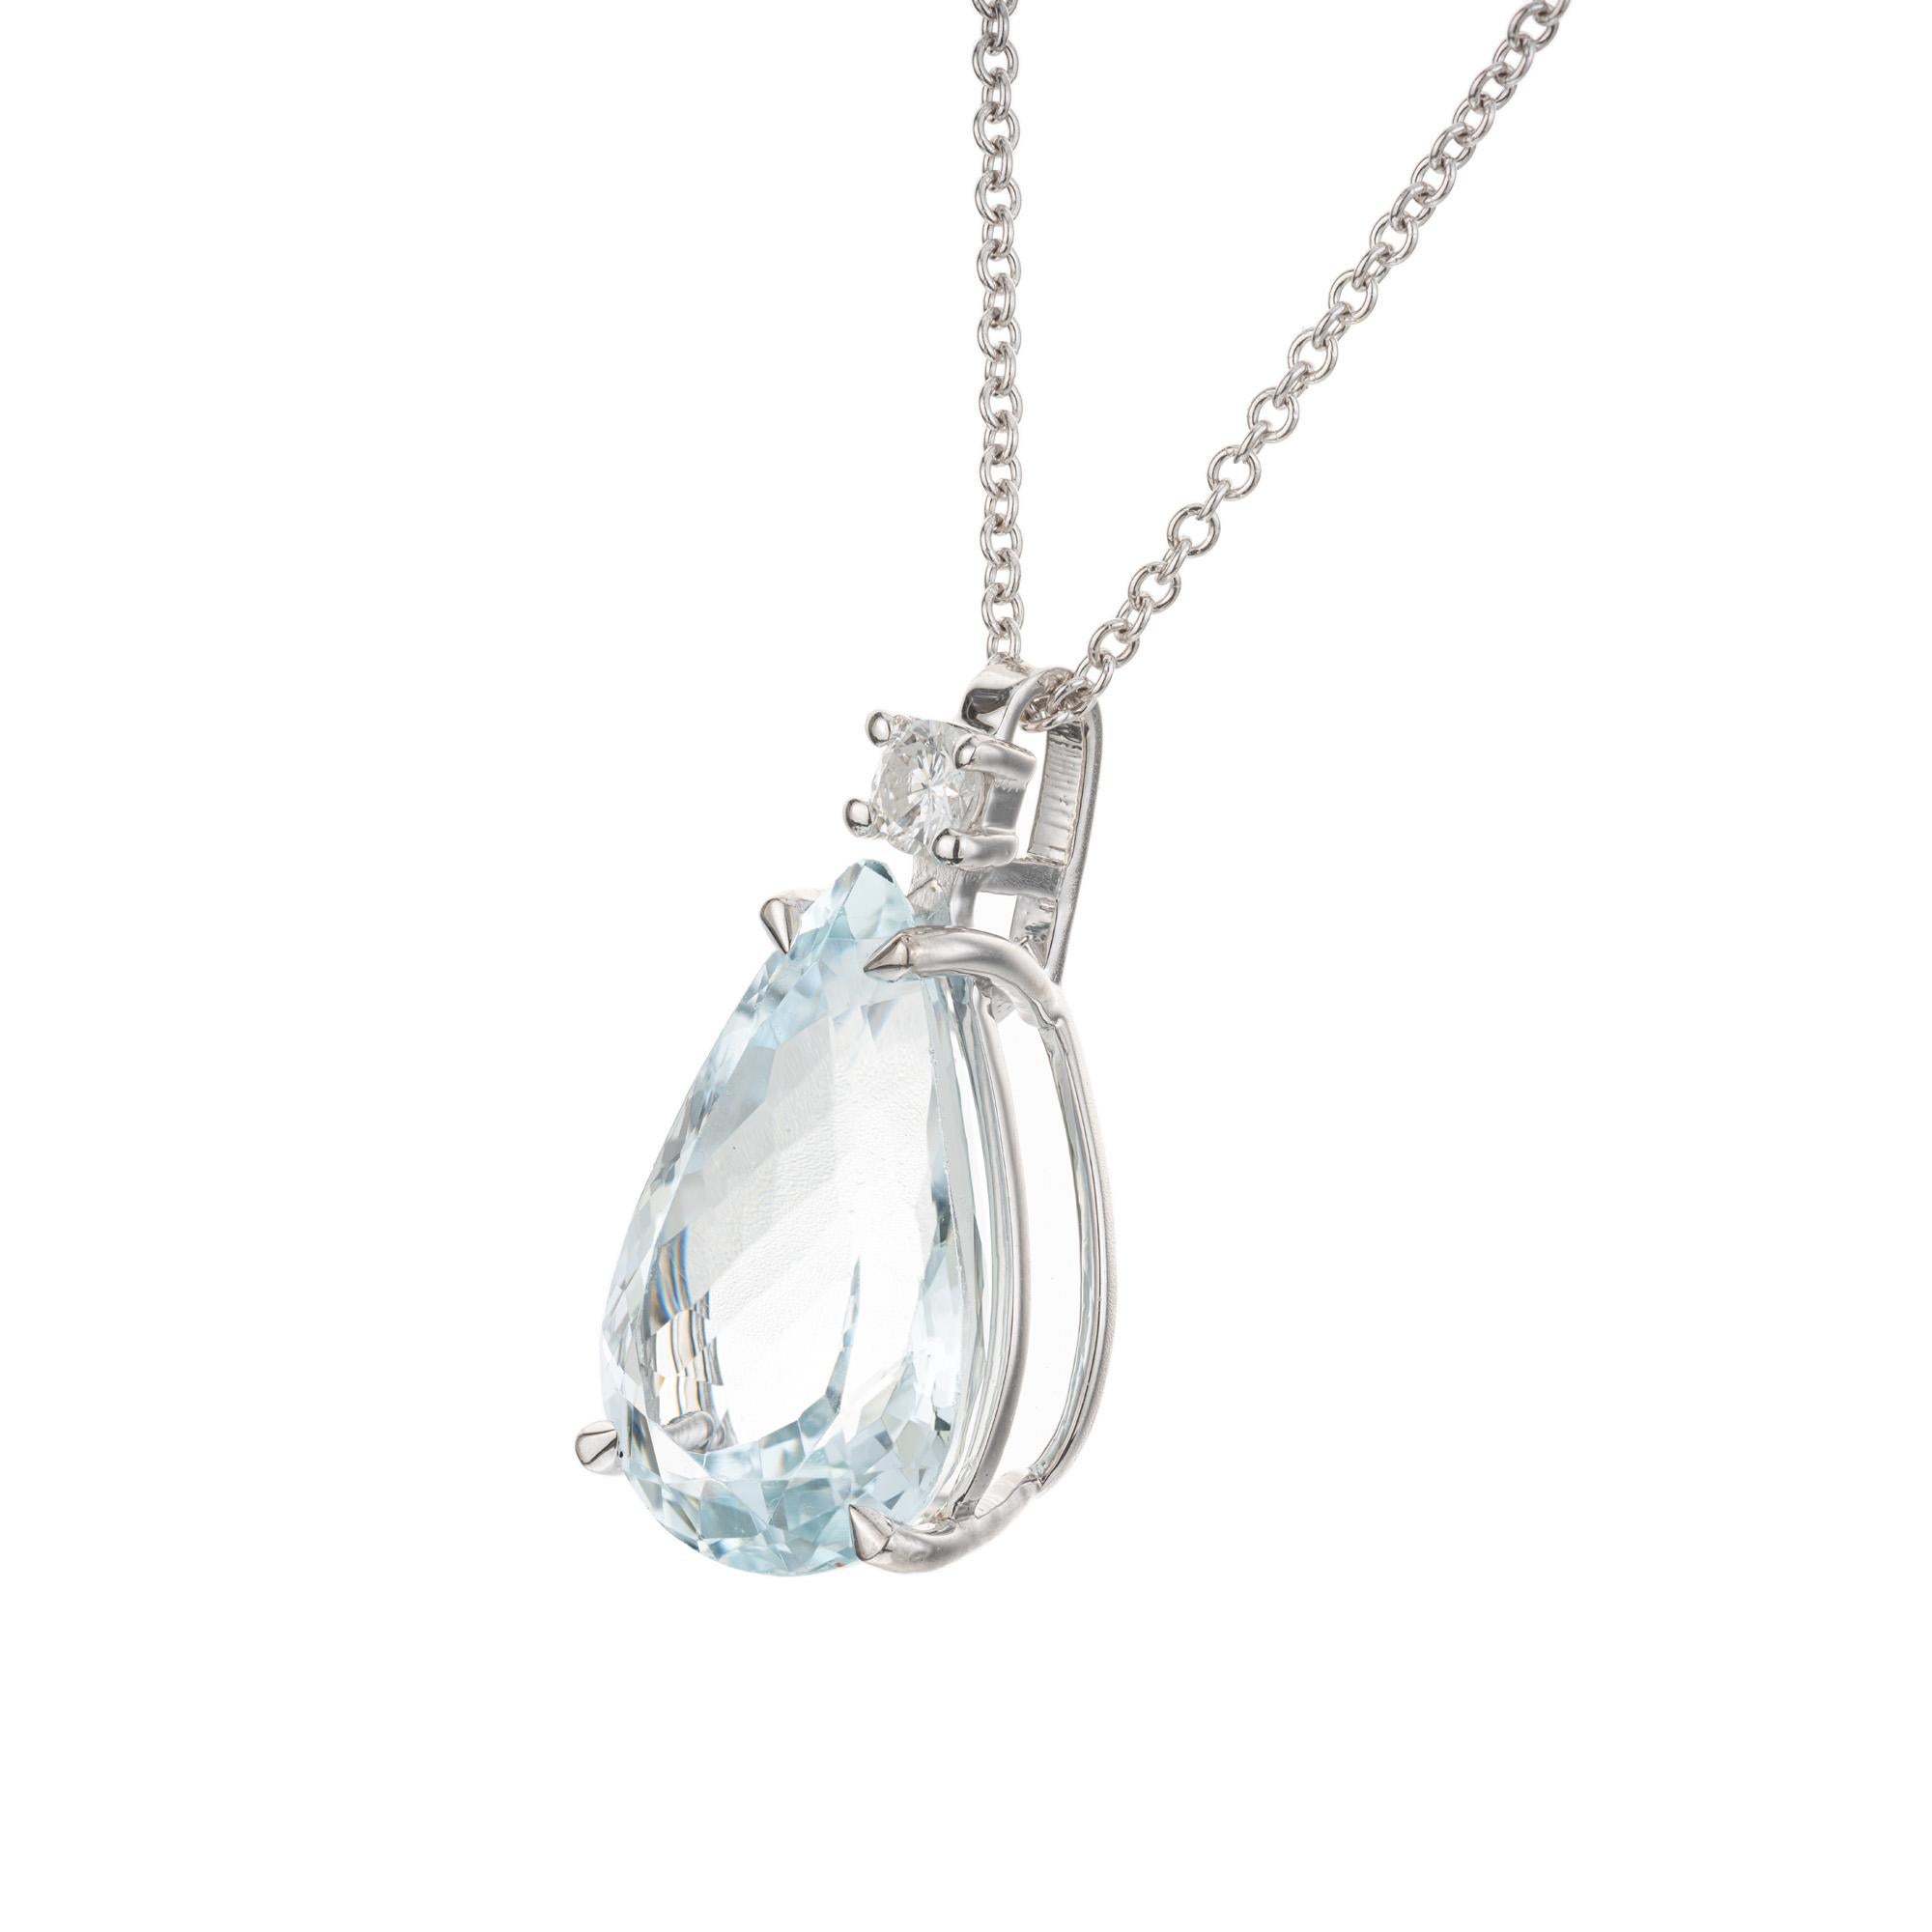 Ce collier pendentif est orné d'une aigue-marine de 6,98 carats en forme de poire, sertie dans une monture à quatre griffes en or blanc 14 carats et rehaussée d'un diamant rond de taille brillant. L'Aqua a une teinte bleue sereine et apaisante. Le